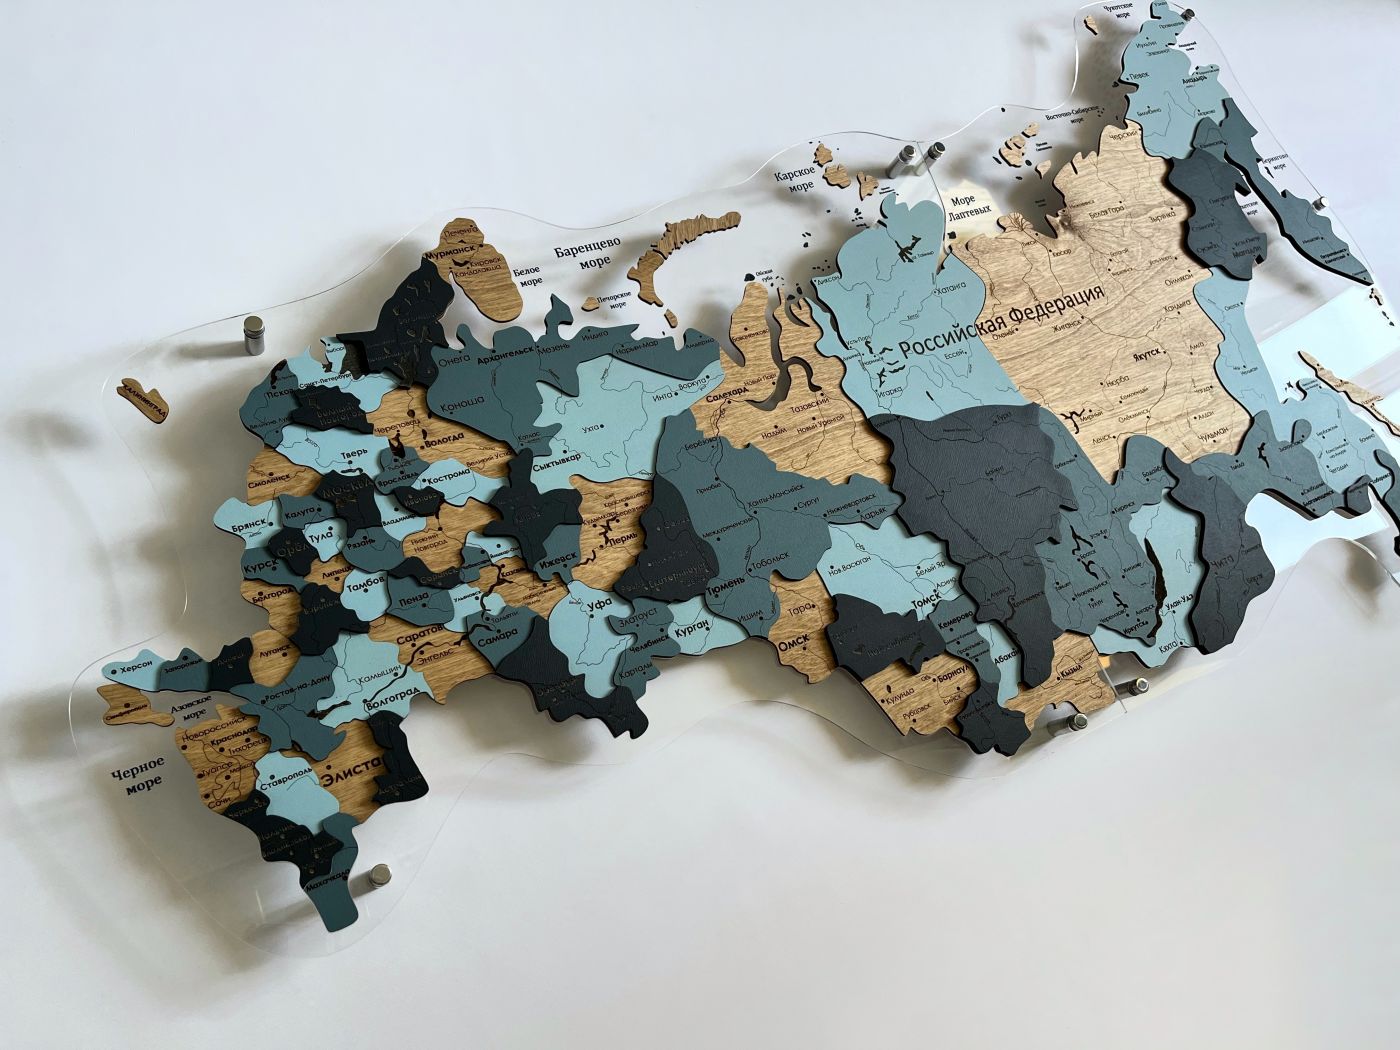 Цвет "Хибины", Многоуровневая карта РОССИИ из дерева, на подложке из орг.стекла, на русском языке, с полной гравировкой, с черной гравировкой на орг.стекле